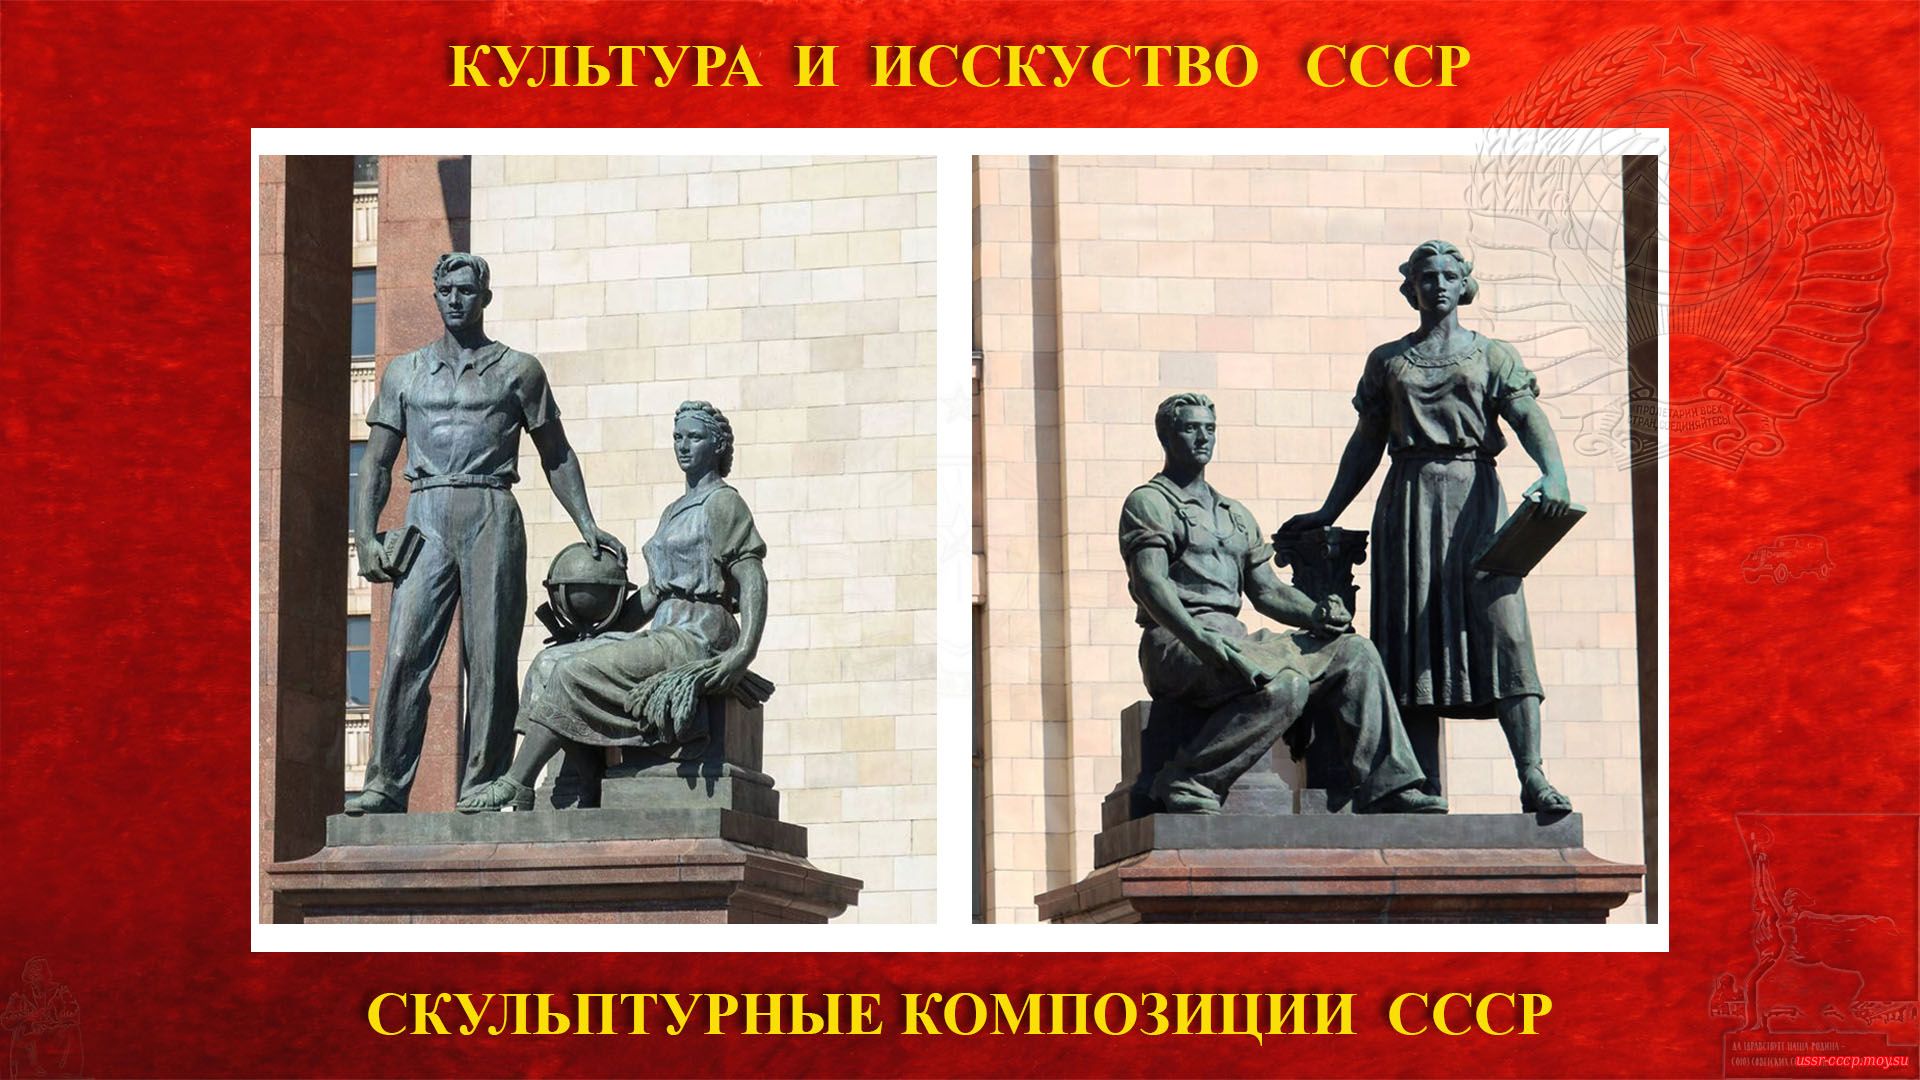 Скульптурные композиции «Молодежь в науке» и «Молодежь в труде» на Ленинских горах (Москва 1953) (повествование)